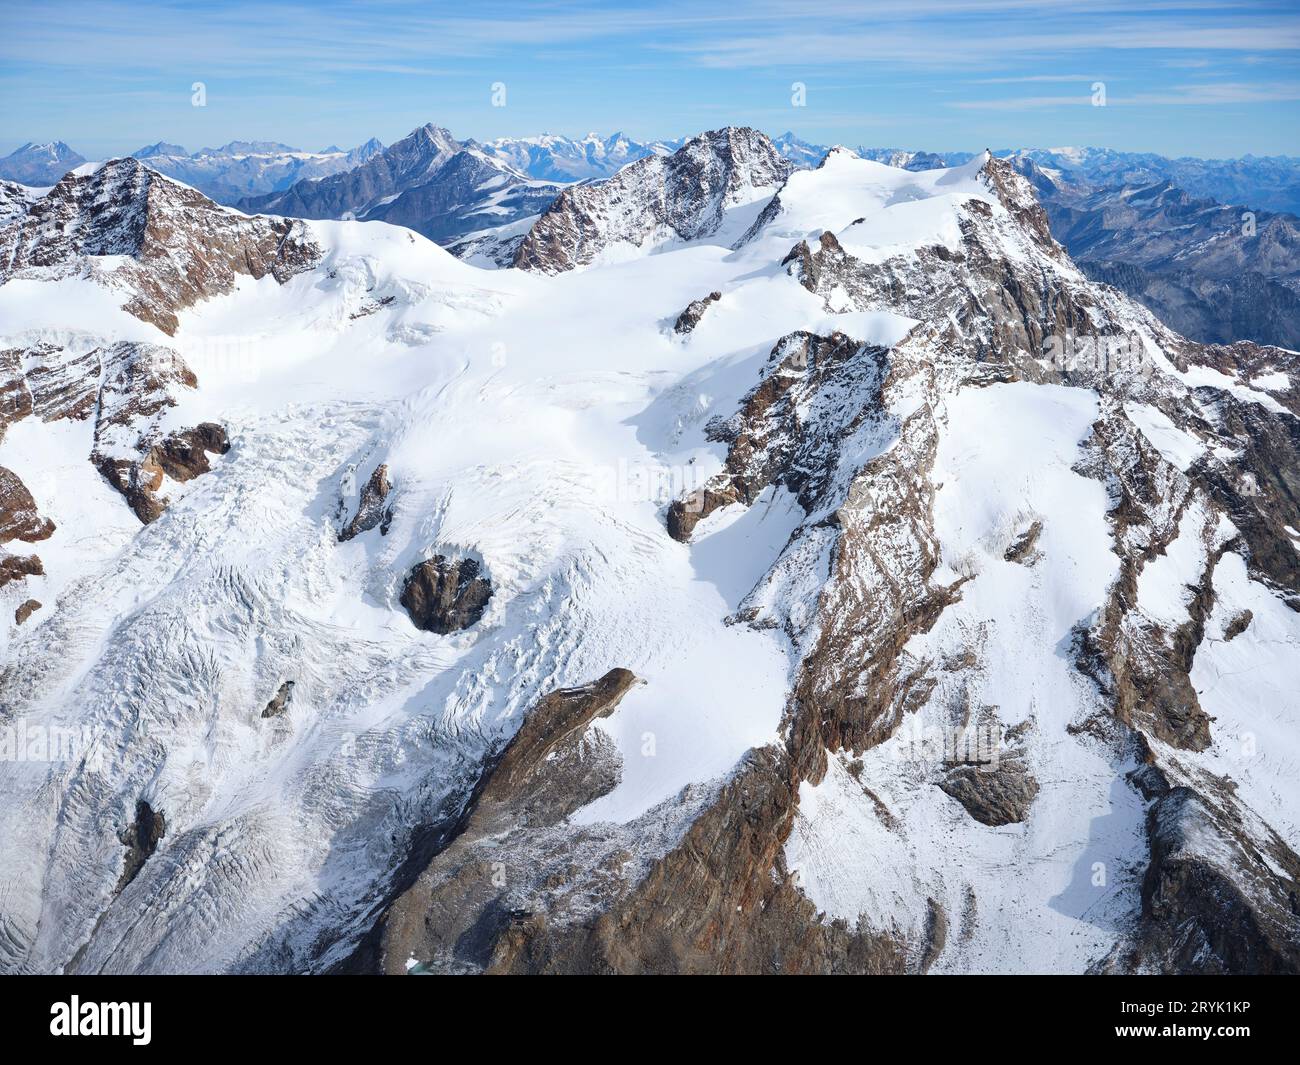 VUE AÉRIENNE. Côté sud et italien du massif du Monte Rosa avec le glacier de la Lys dans la haute vallée de la Lys. Vallée d'Aoste, Italie. Banque D'Images